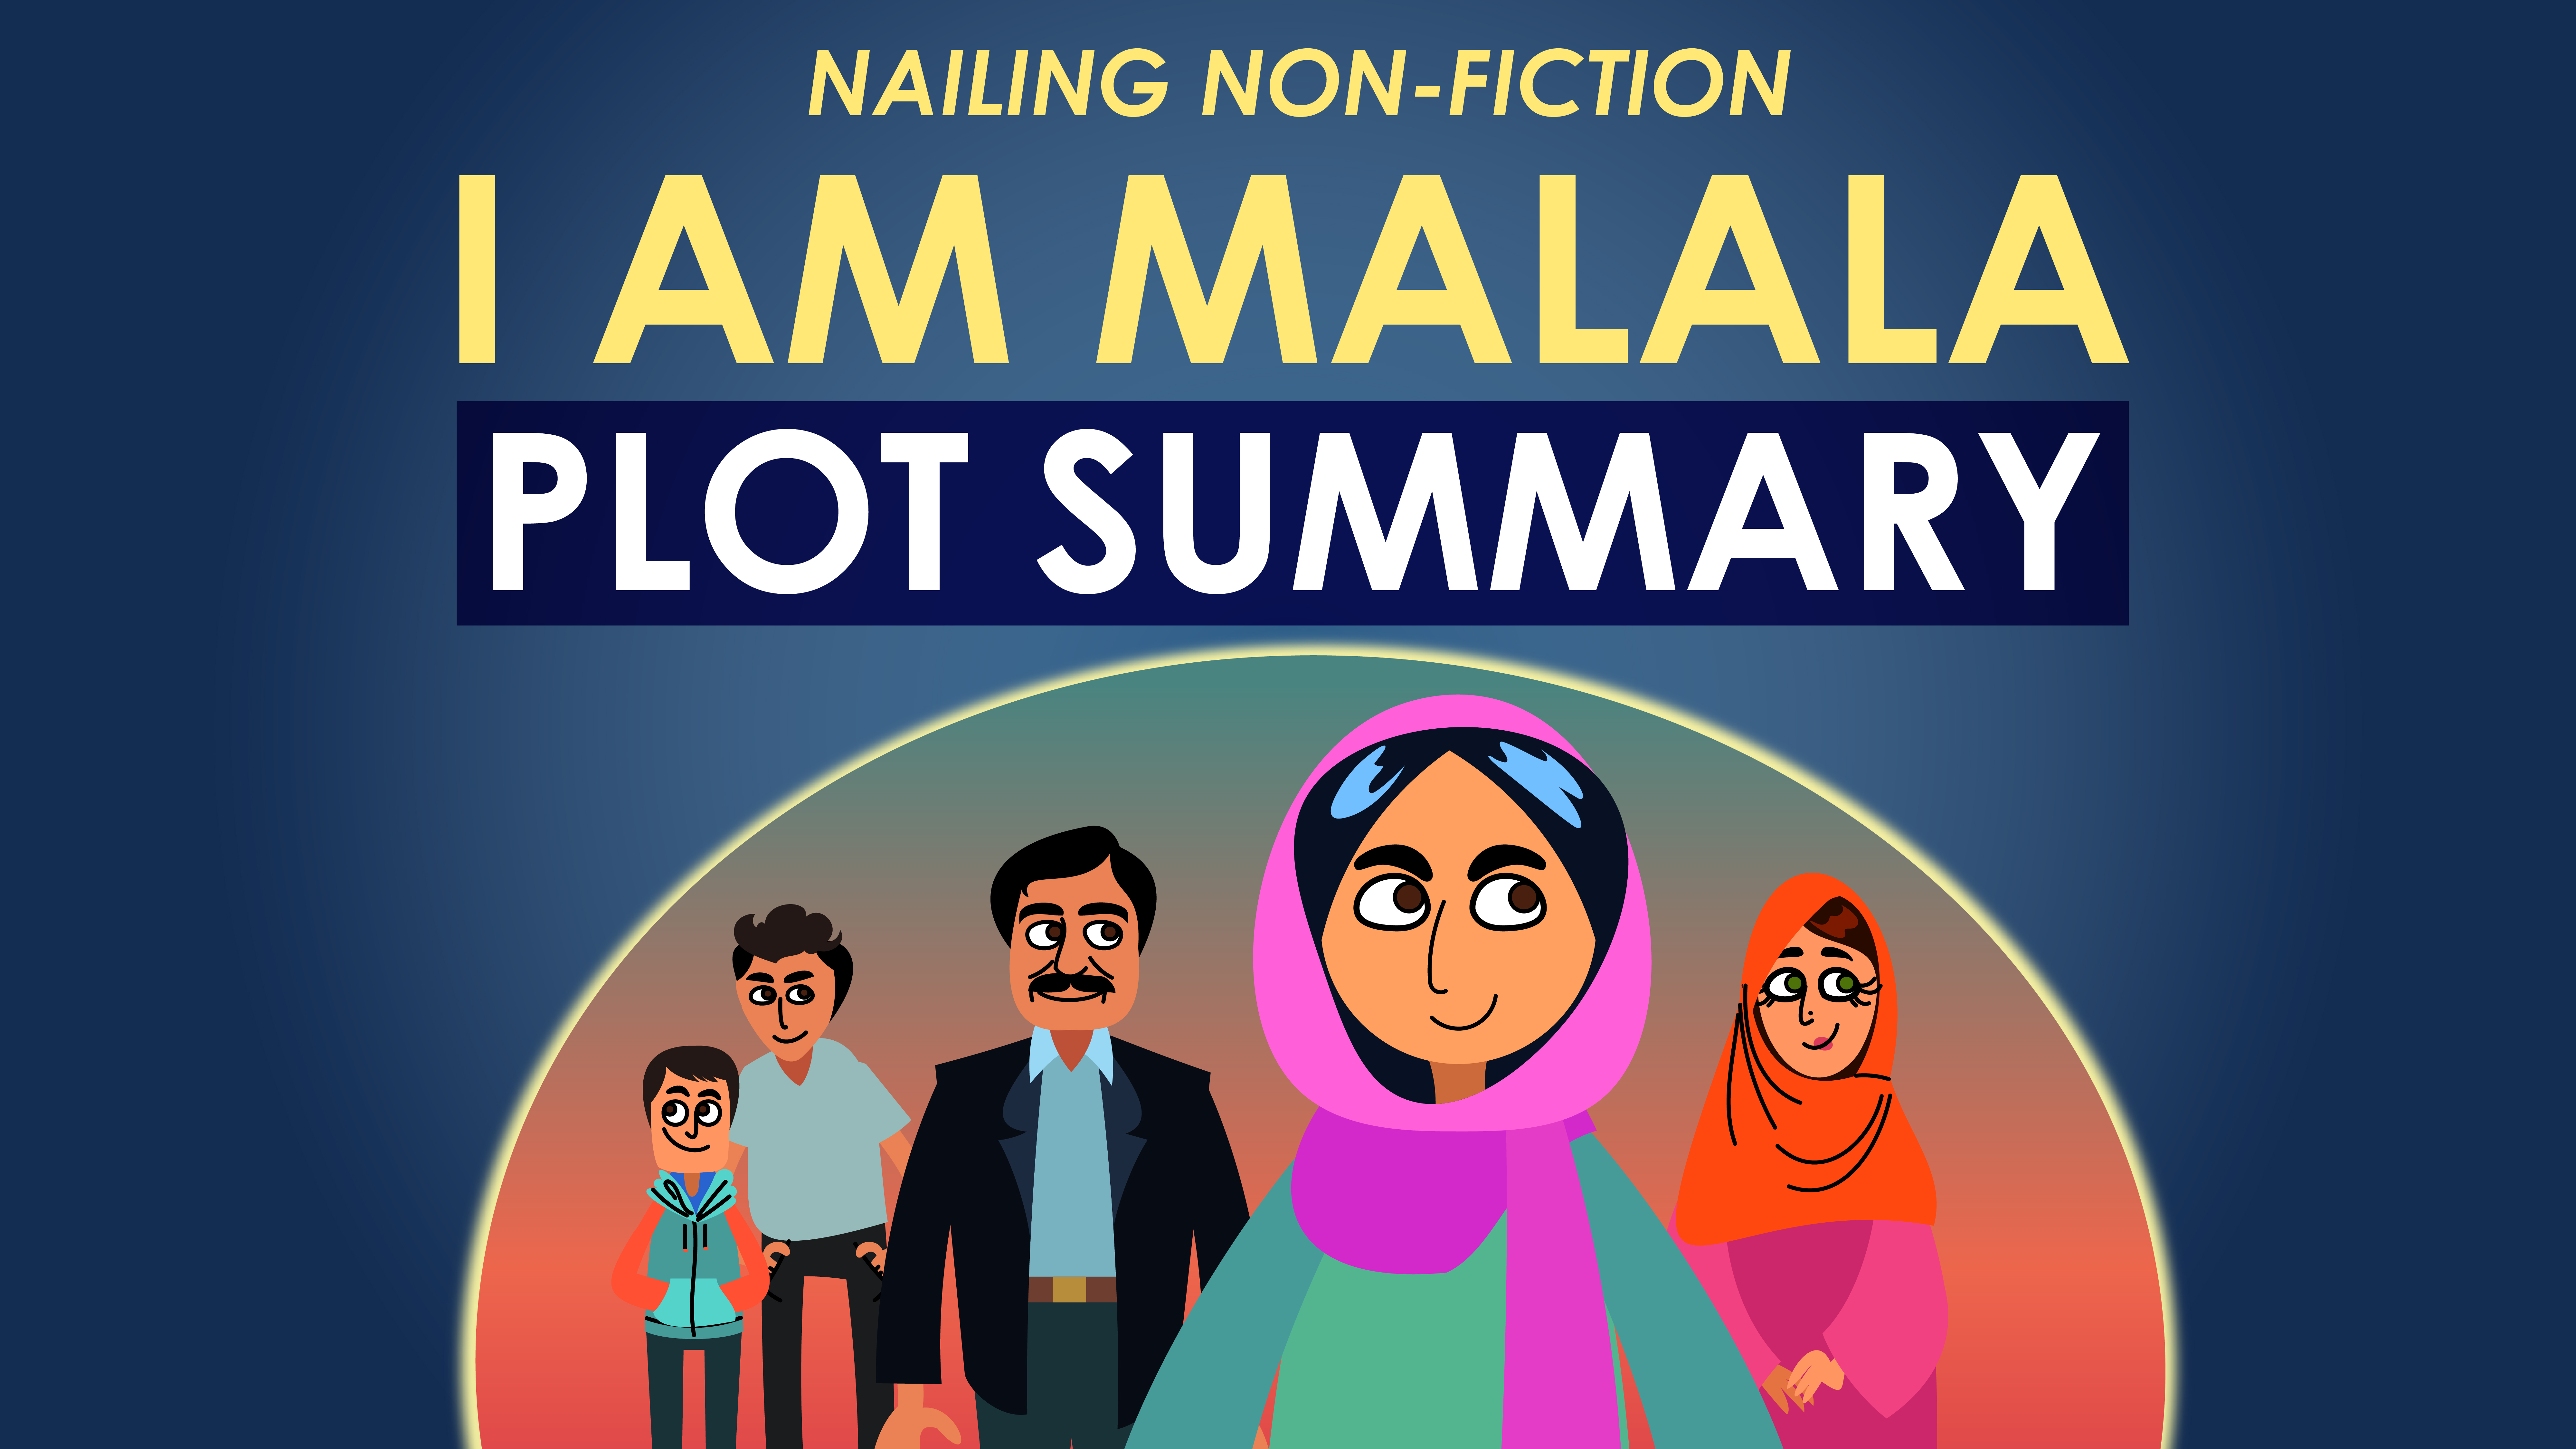  I Am Malala - Plot Summary - Nailing Non-Fiction Series